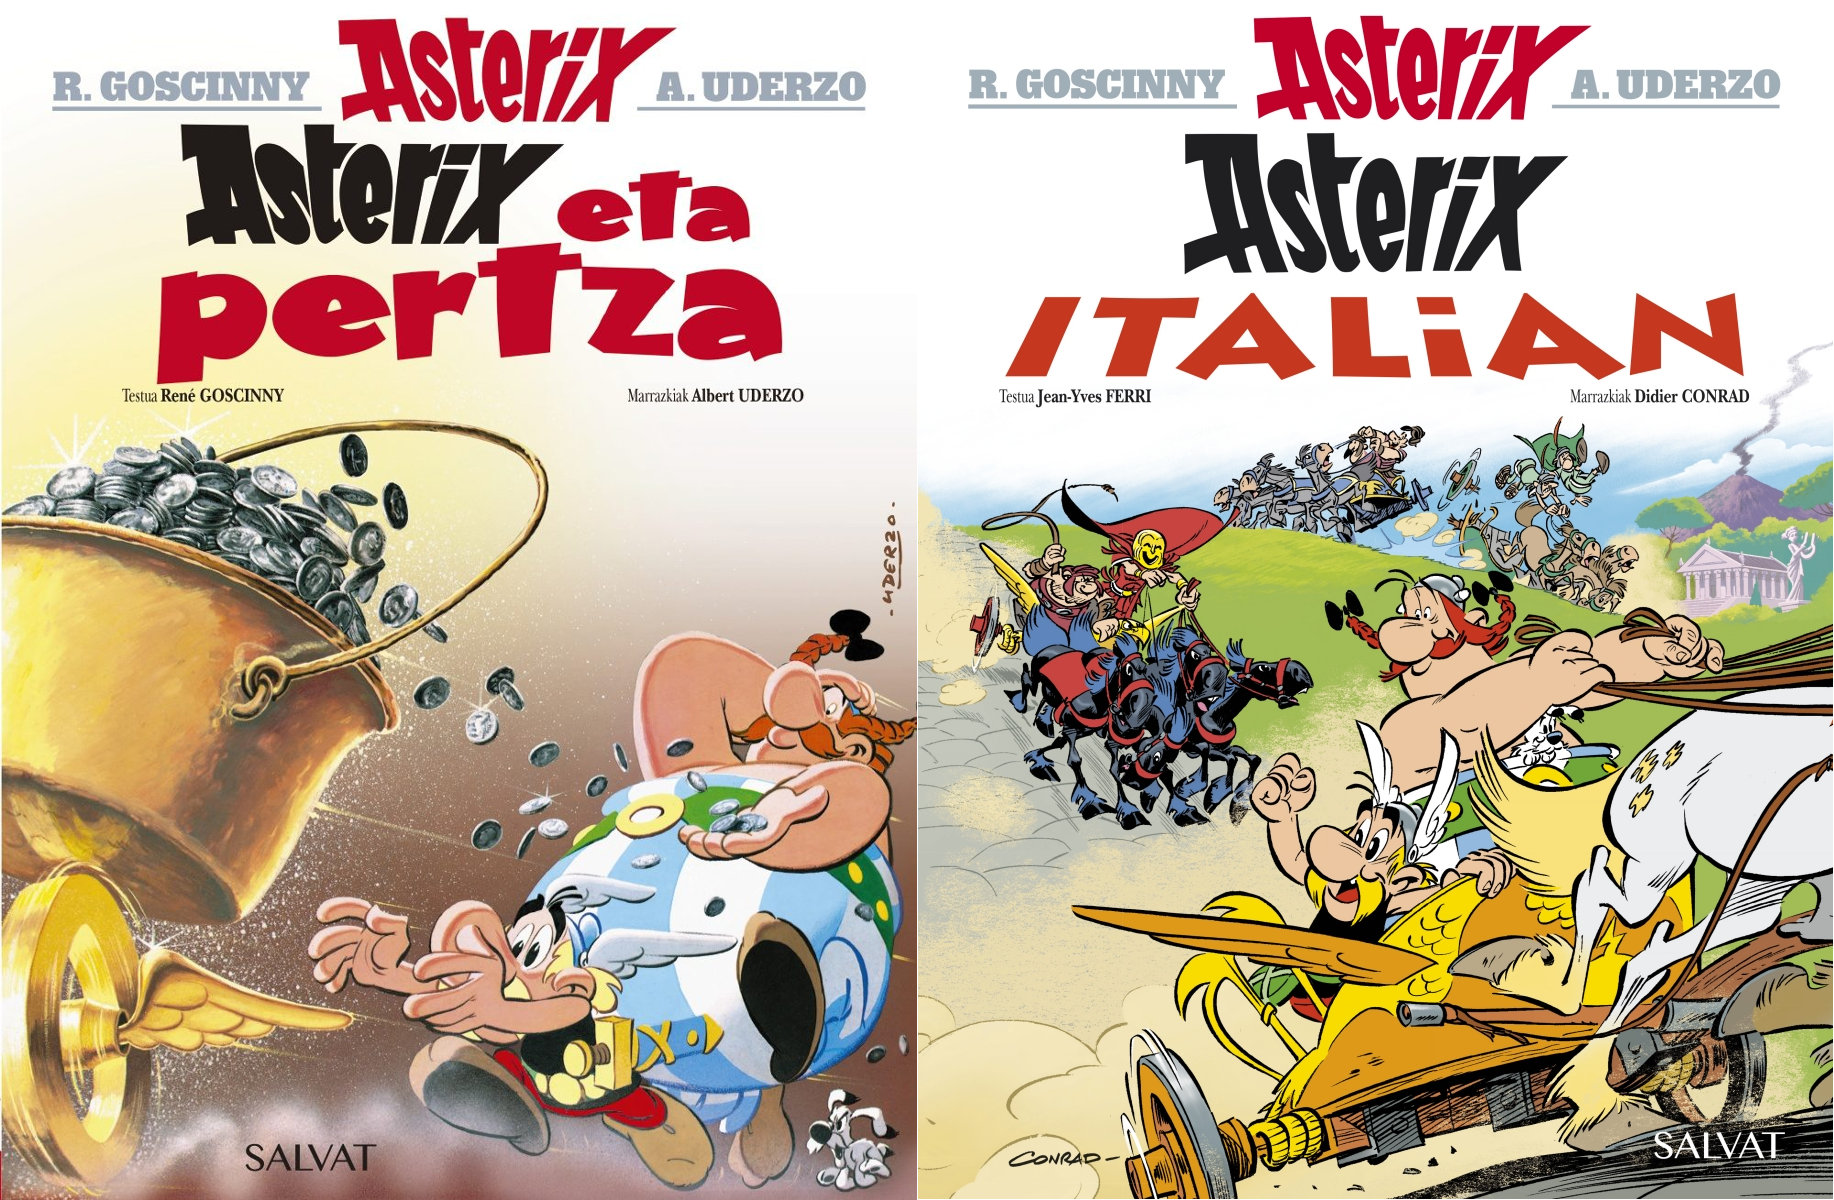 Asterixen abenturen bi album berri: "Asterix eta pertza" eta "Asterix Italian"